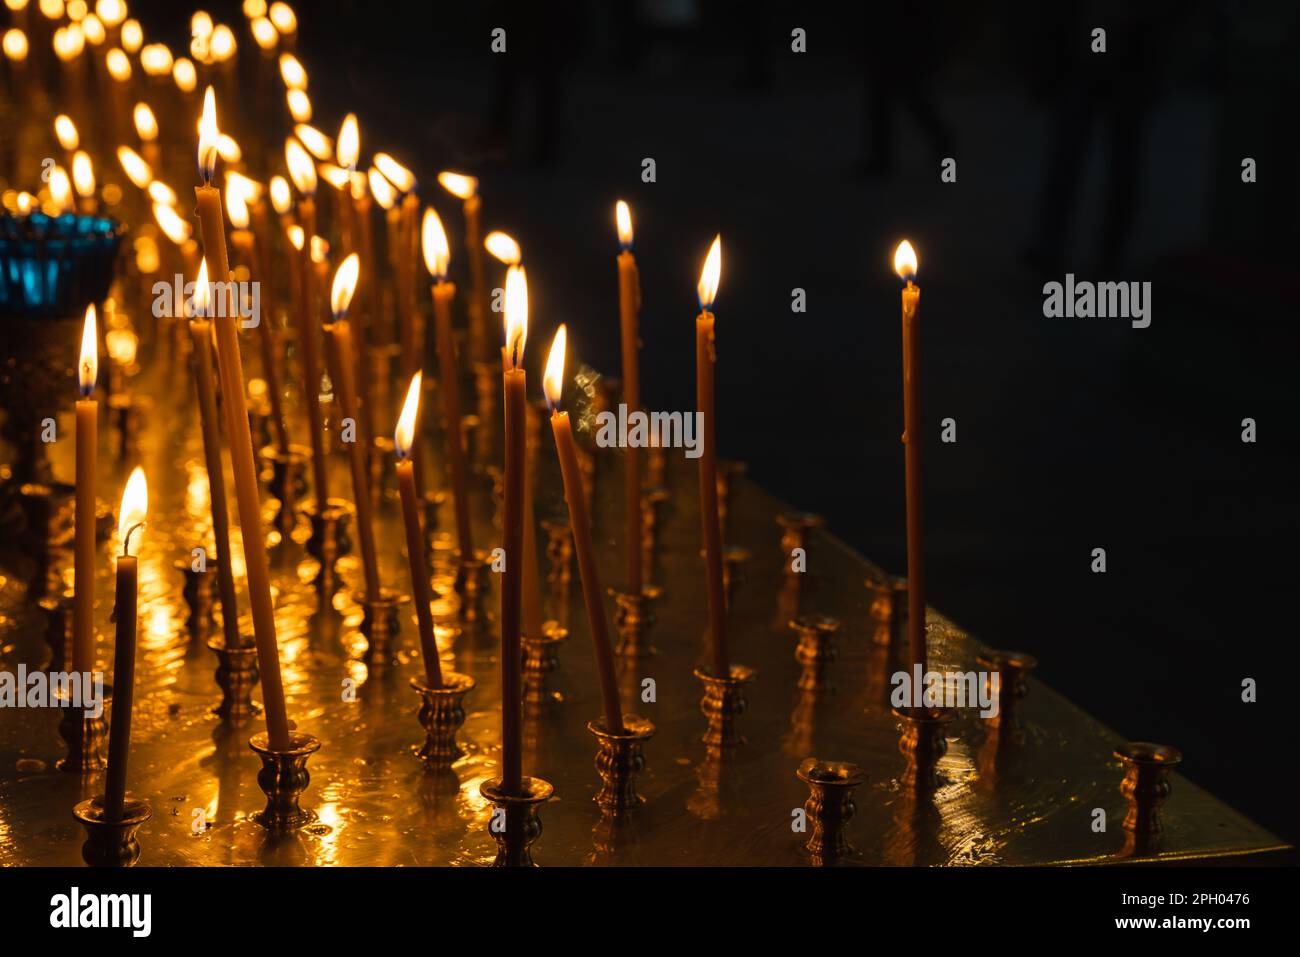 Le candele ortodosse di cera d'api bruciano in un interno scuro della Chiesa Foto Stock